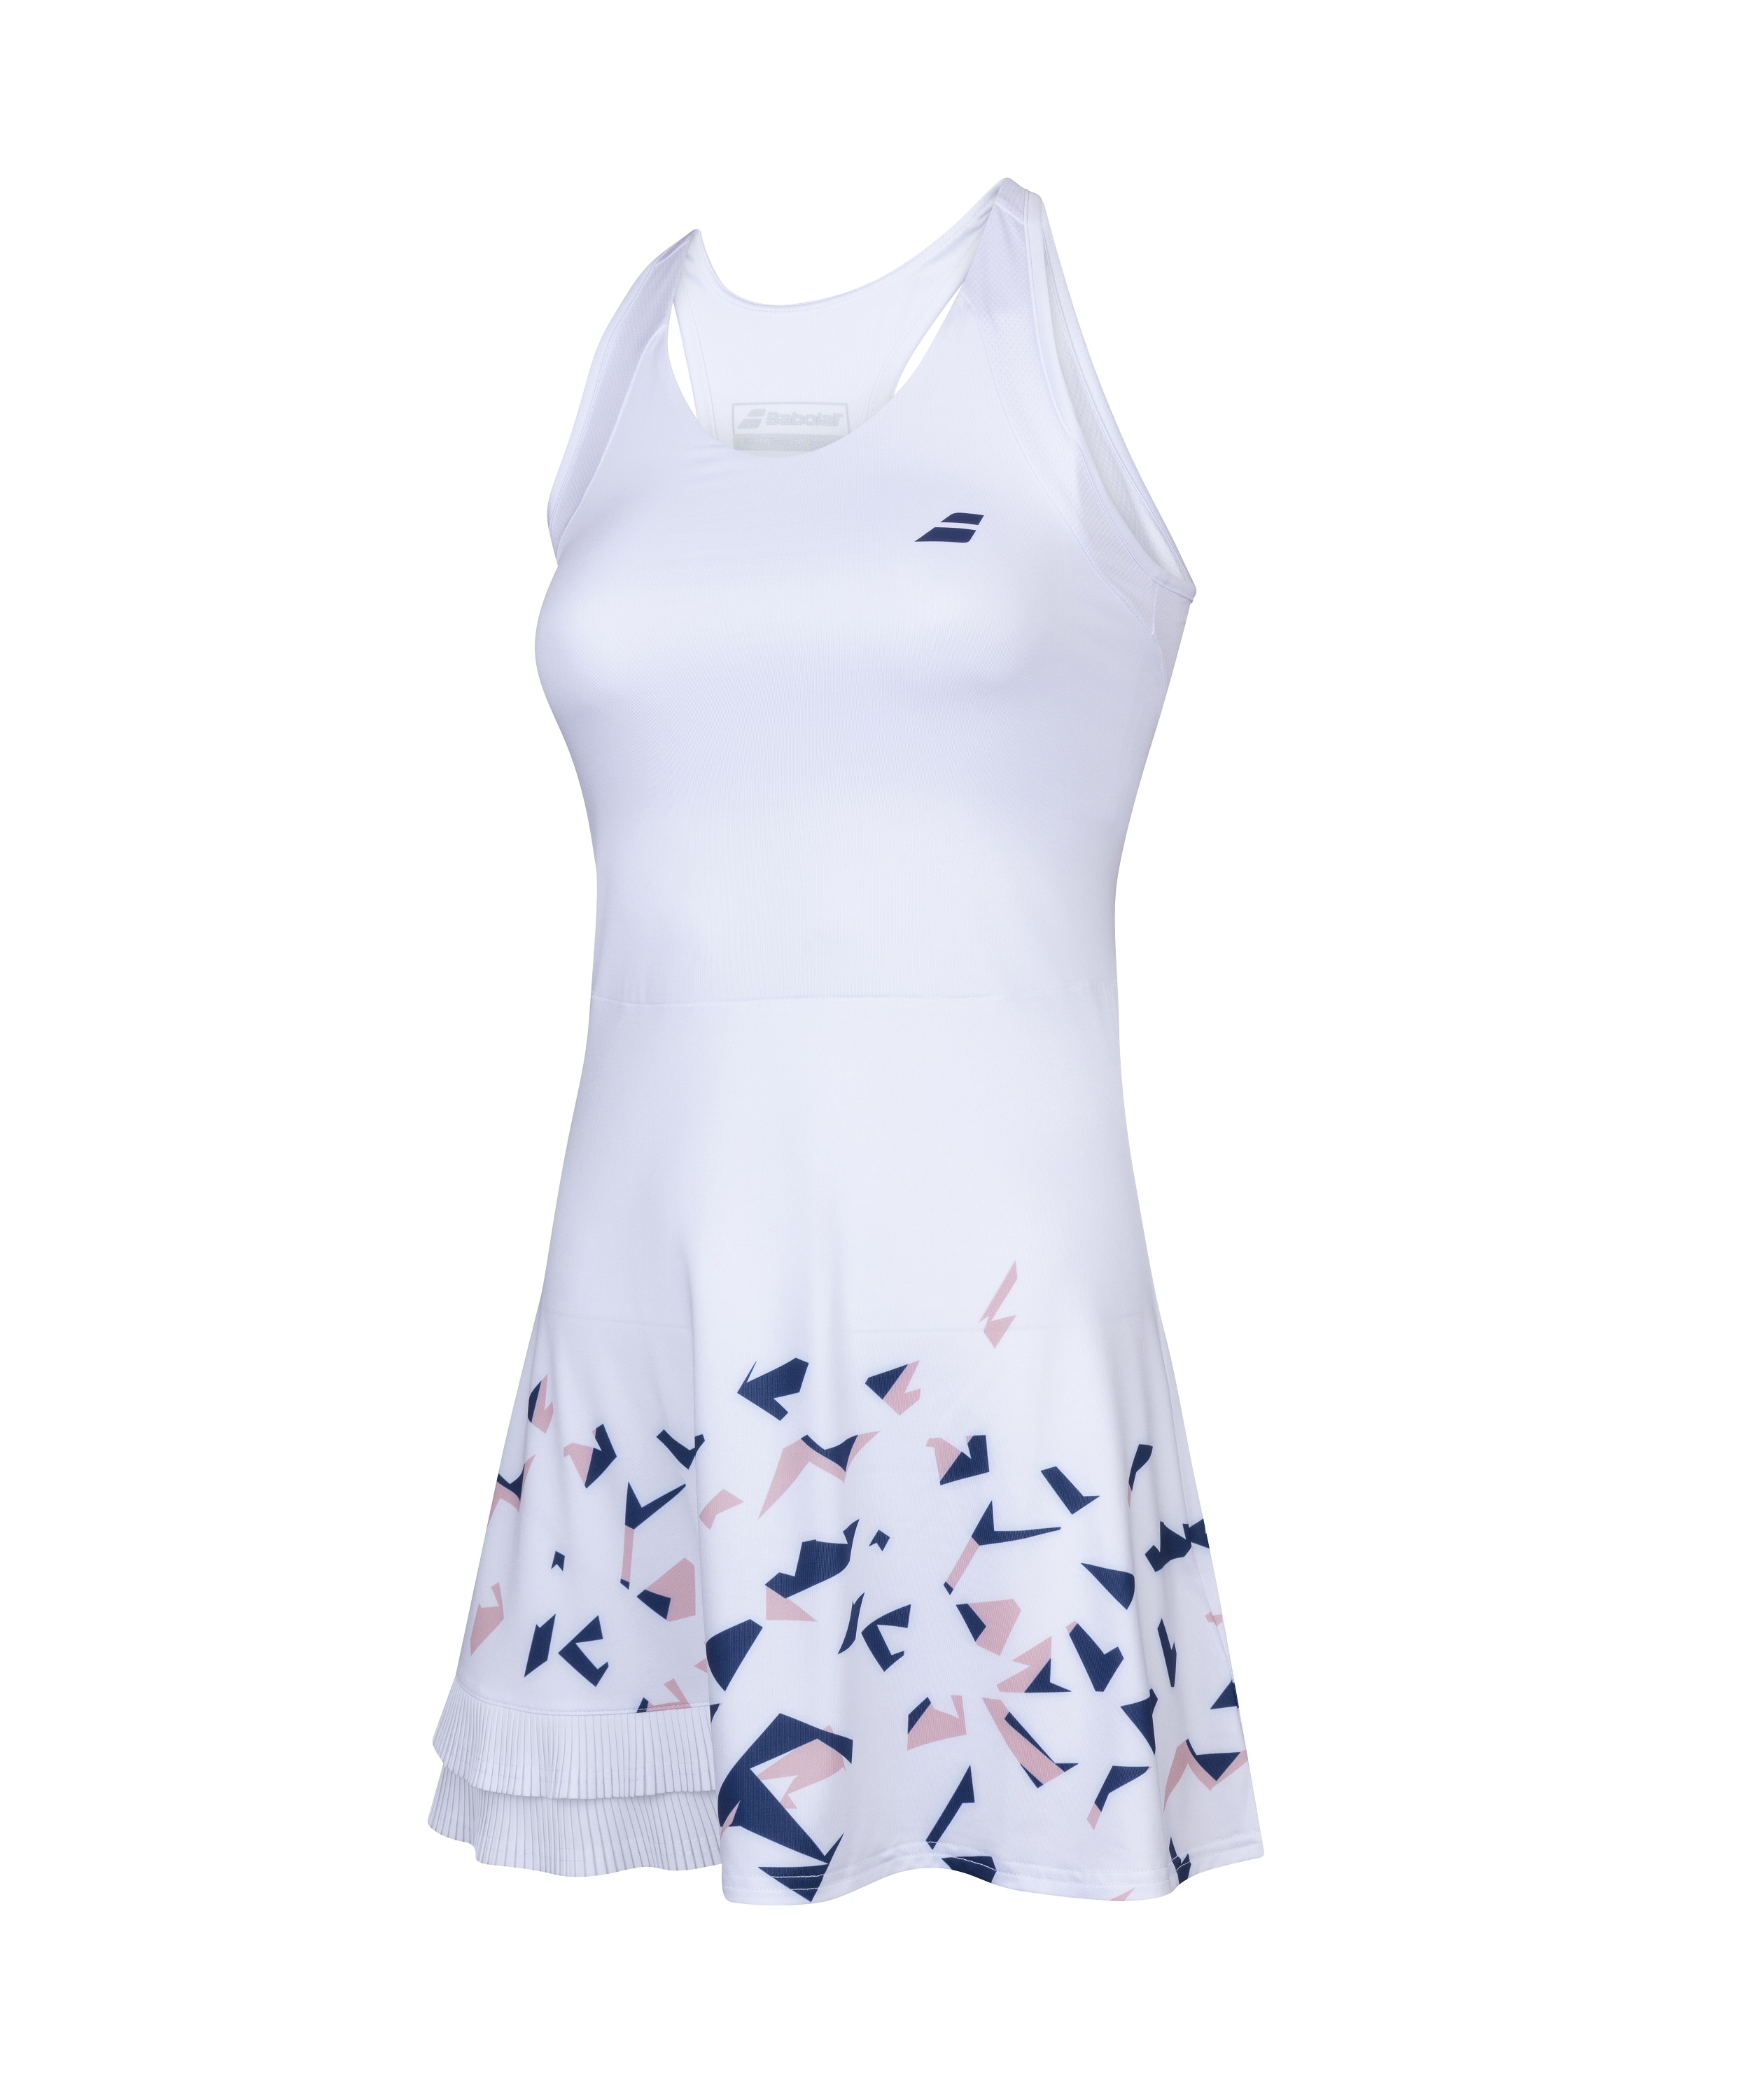 שמלת טניס בבולט Compete Dress Women Babolat